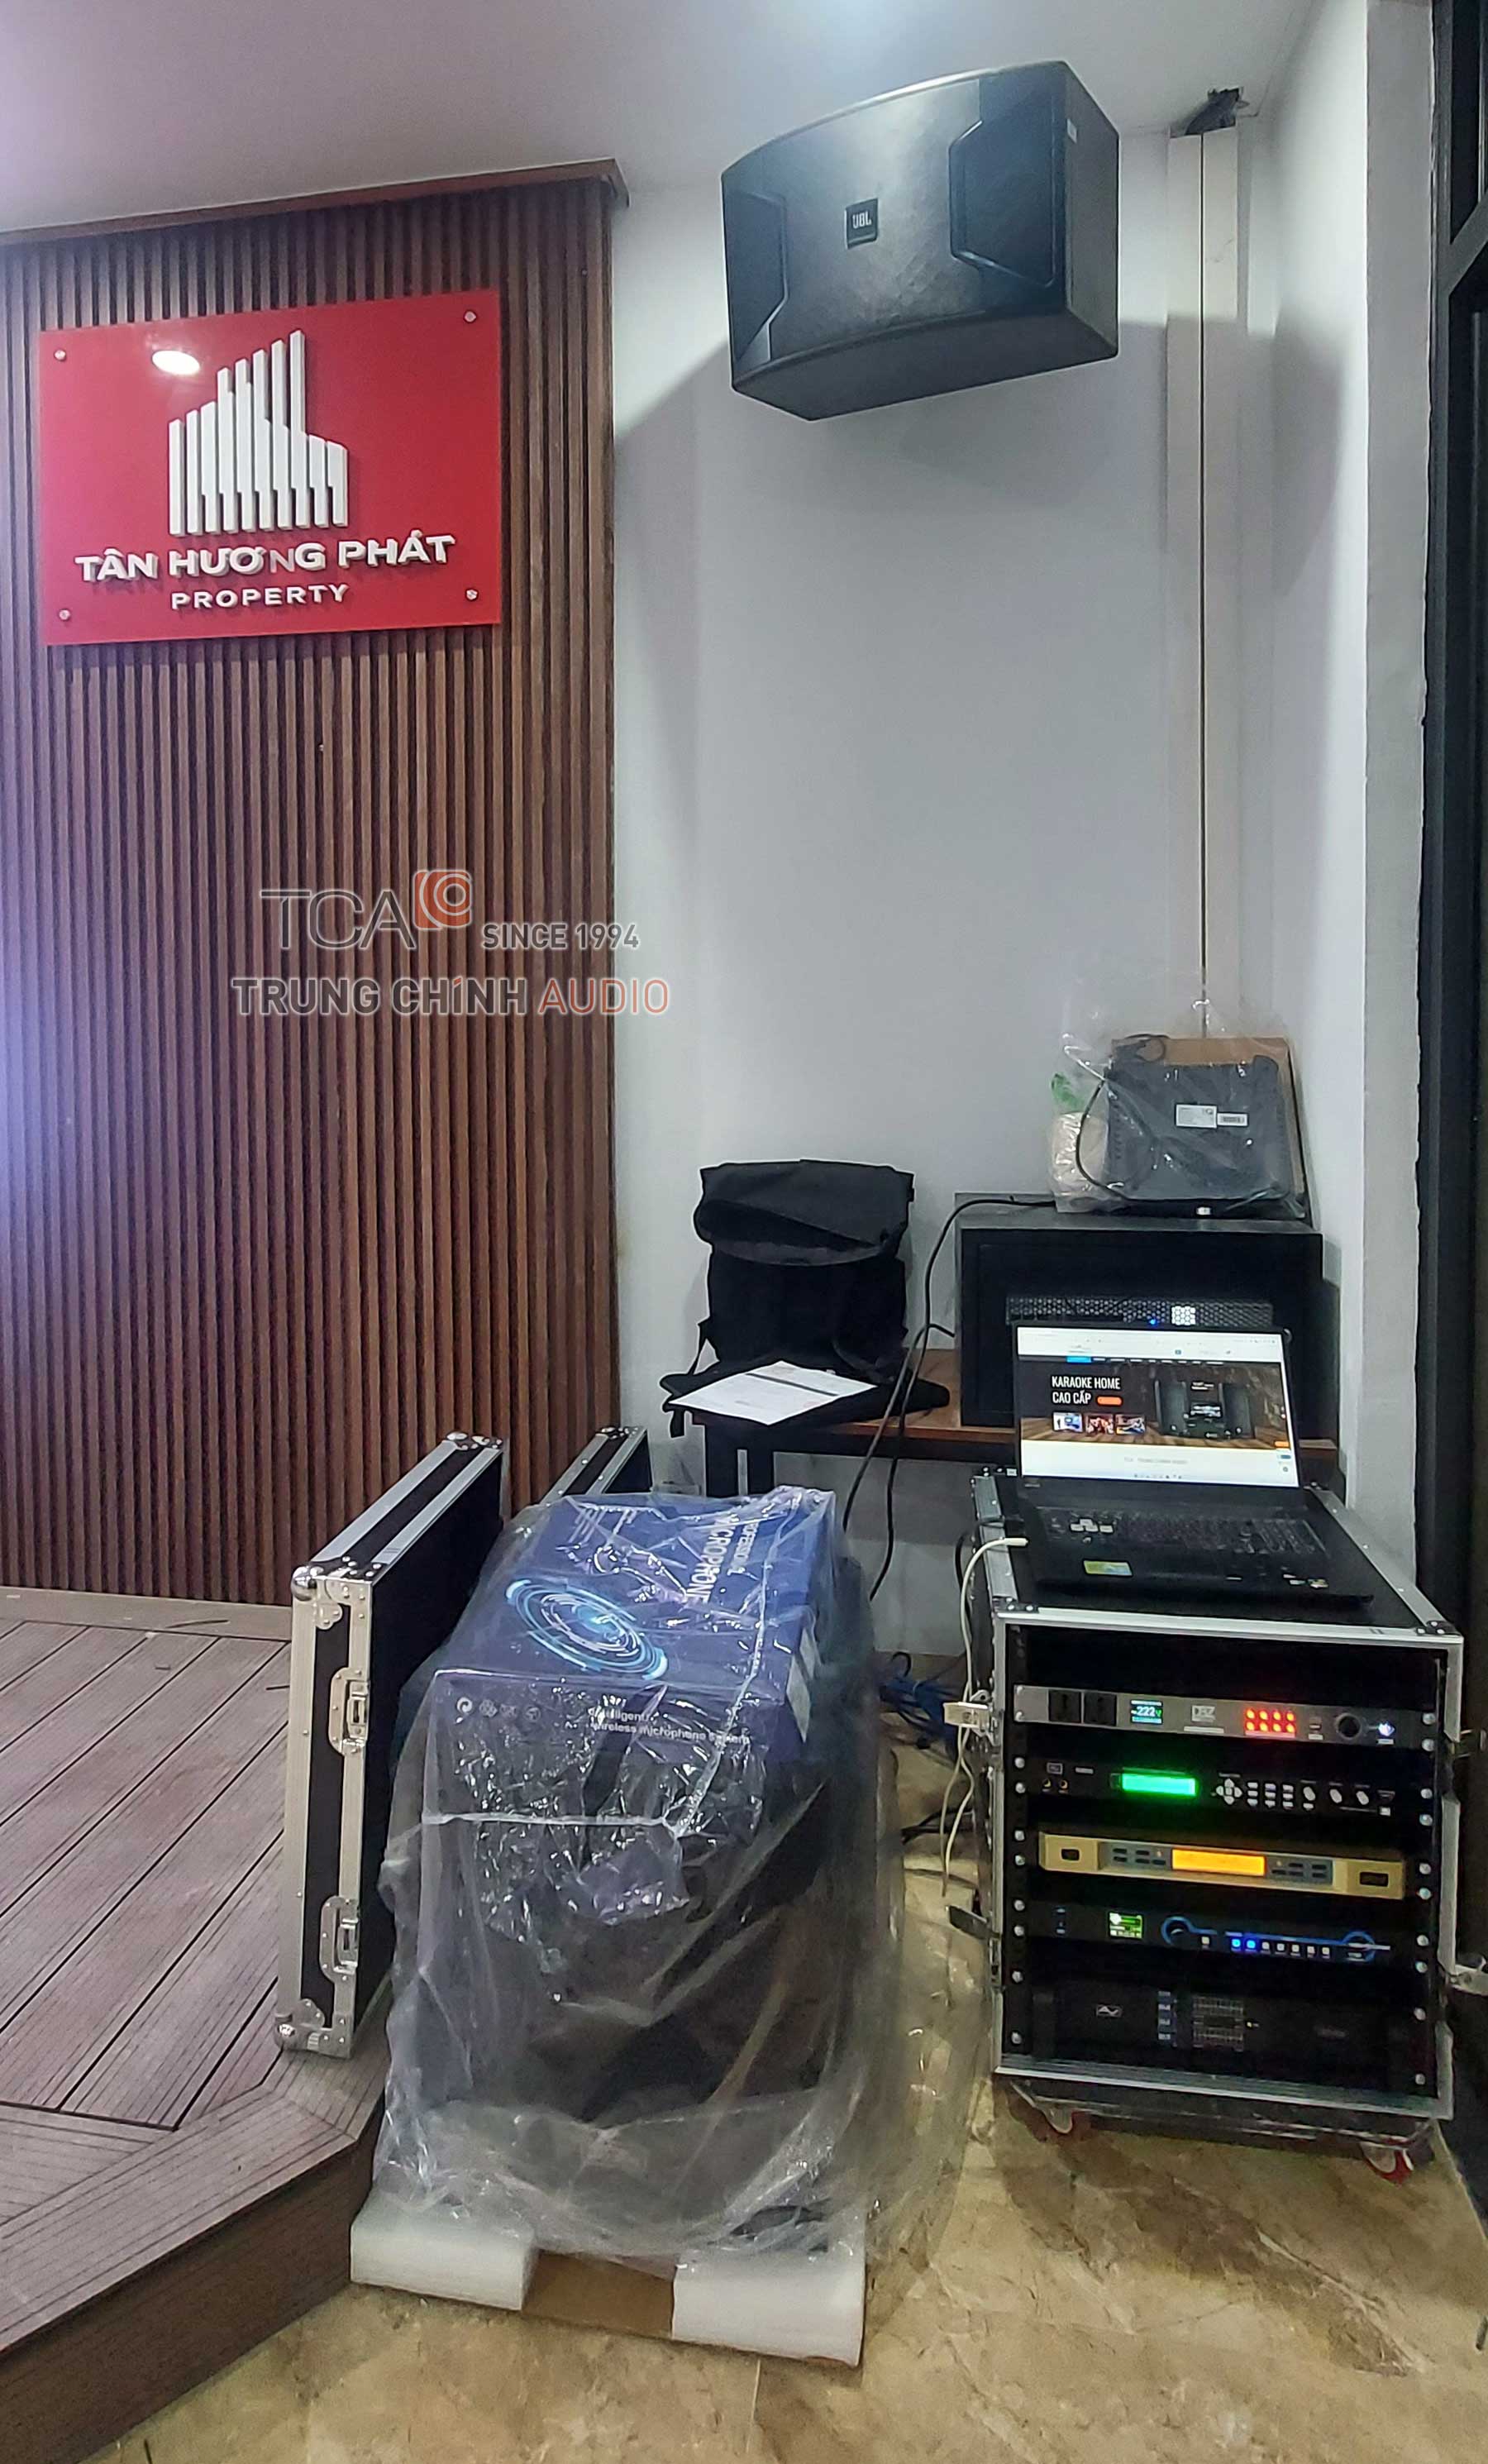 Bộ dàn âm thanh karaoke : Tân Hương Phát Property